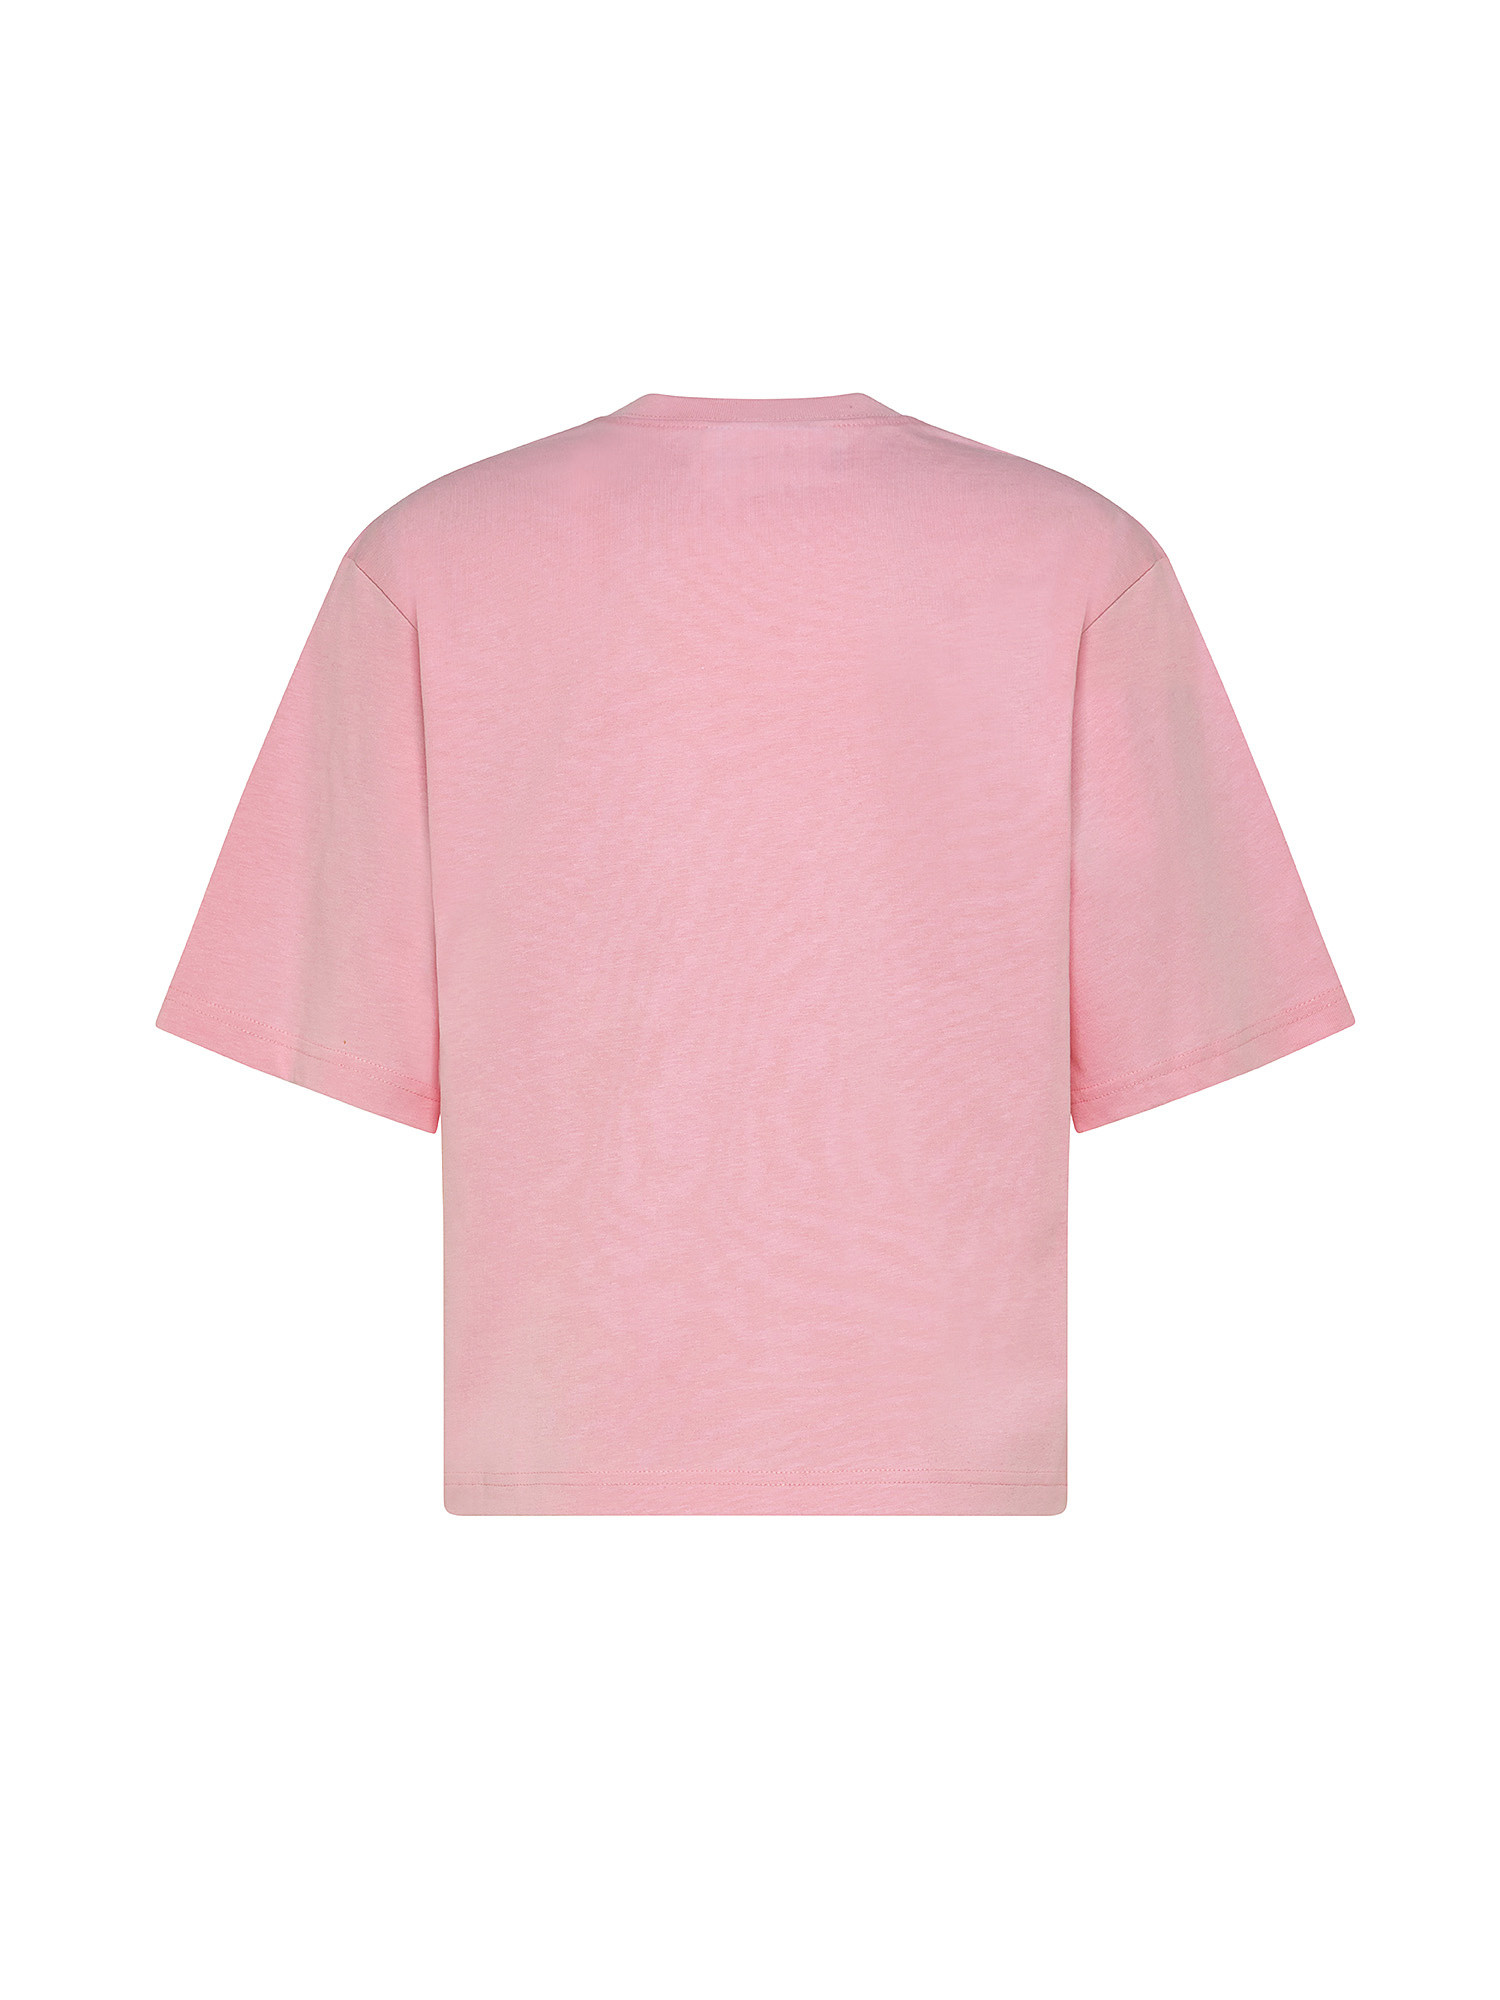 Eye Star T-shirt, Pink, large image number 1